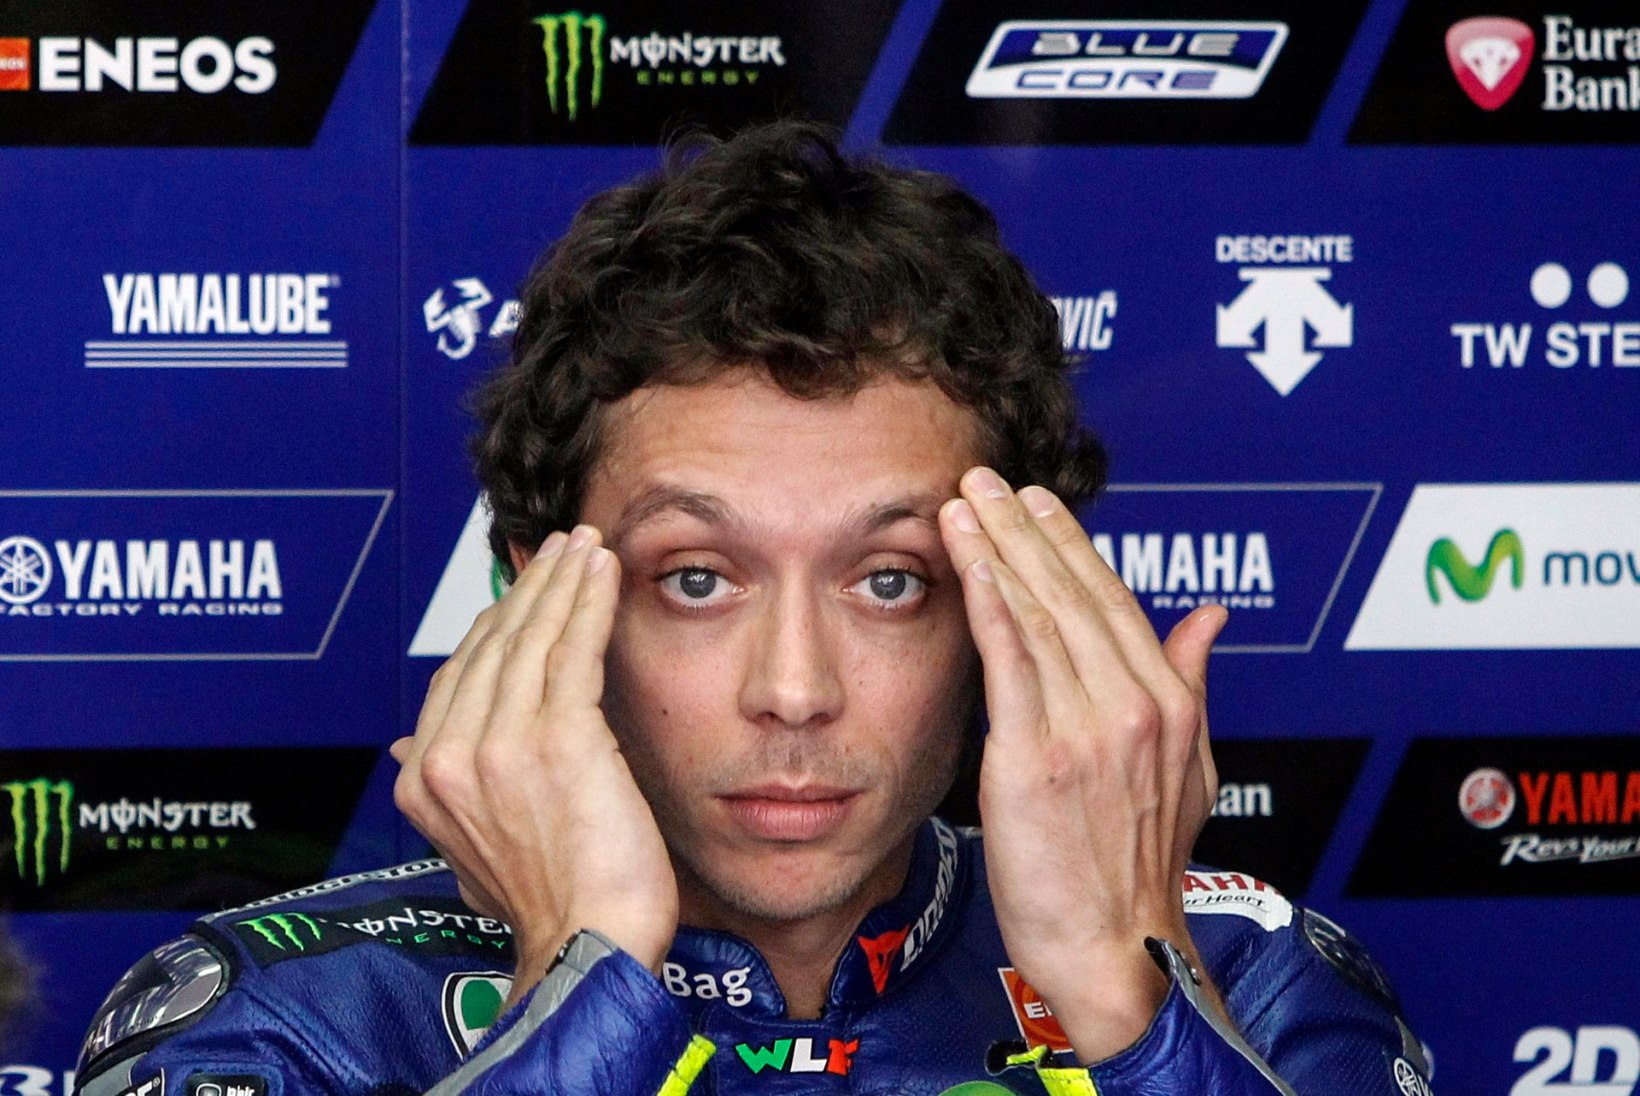 SÜÜDI! Konkurenti kukkuma sundinud Valentino Rossi alustab otsutavat etappi viimaselt stardikohalt